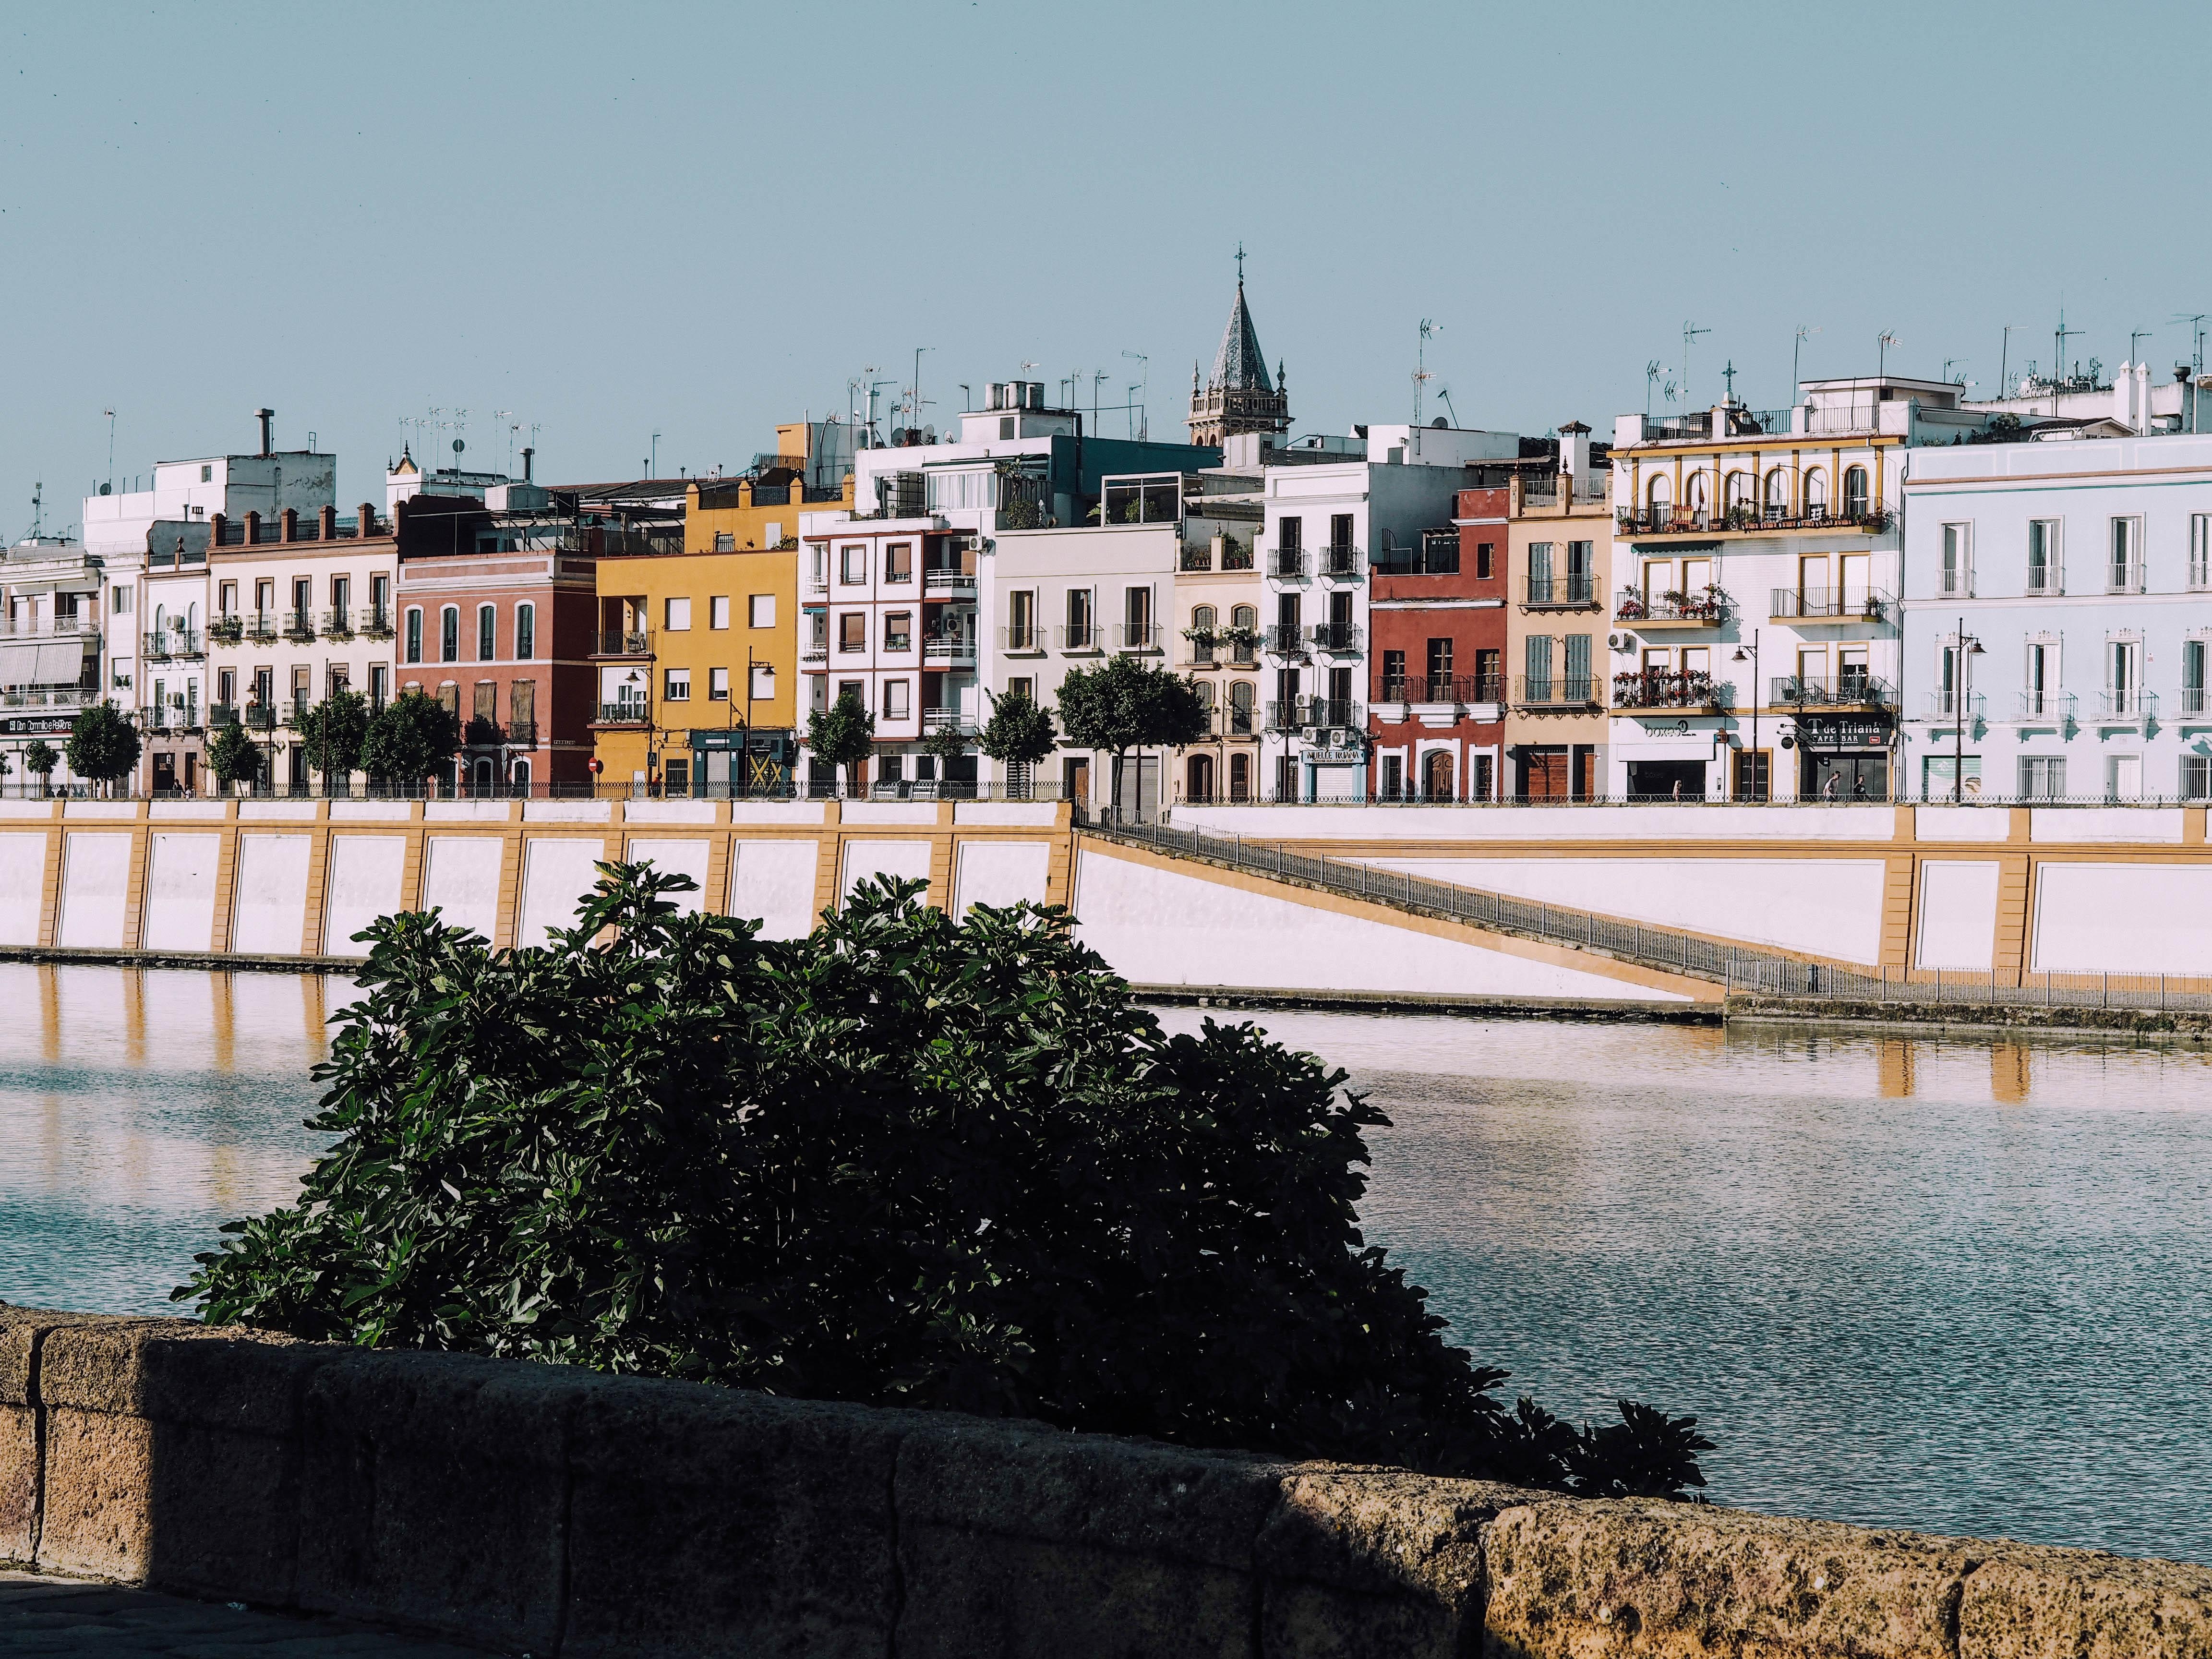 Mein Highlight aus dem letzten Jahr: #Sevilla! Die Häuser und Gärten dort sind traumhaft! #urlaub